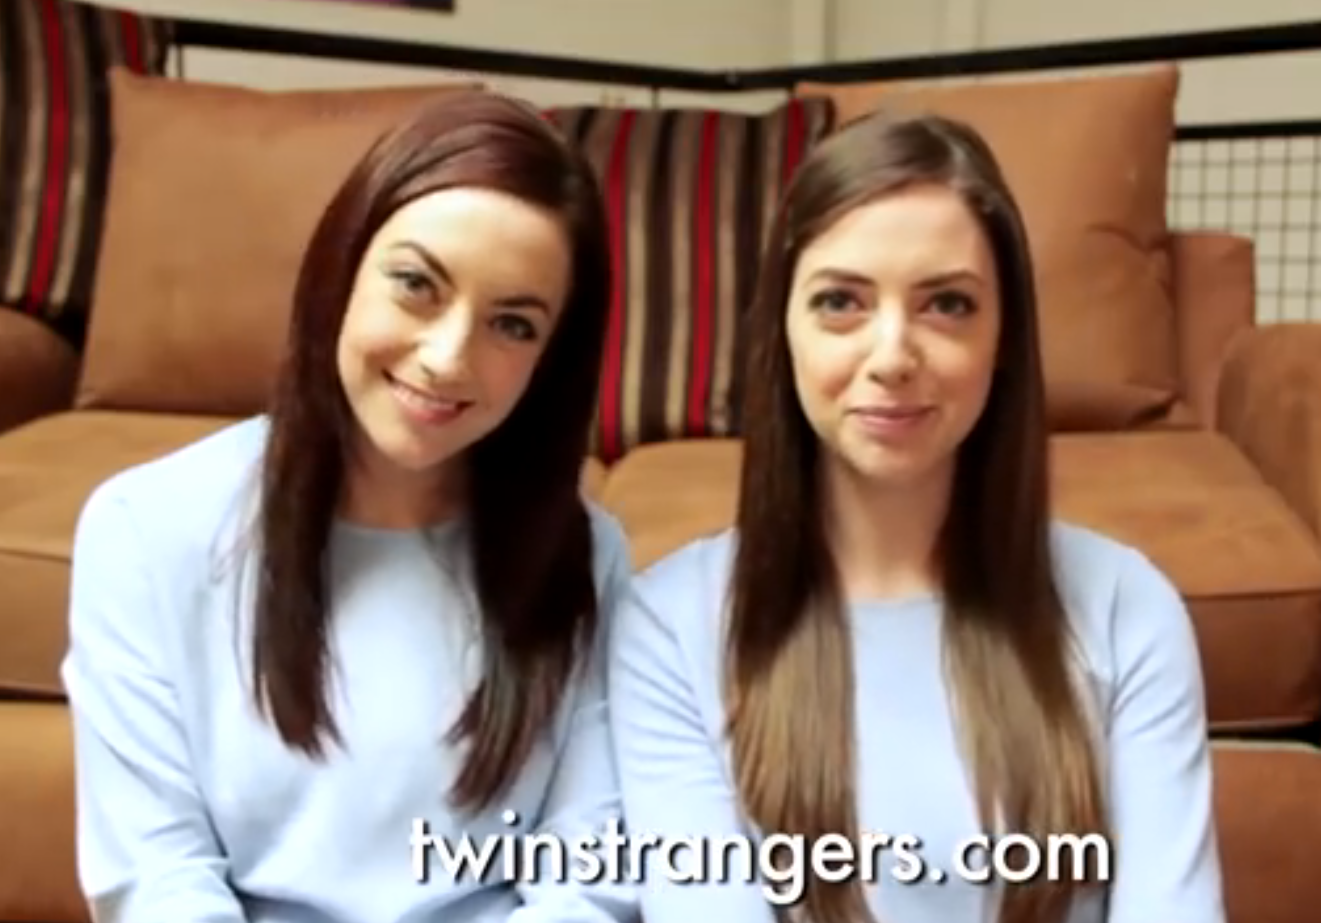 Twin Strangers, le site qui permet de trouver son sosie